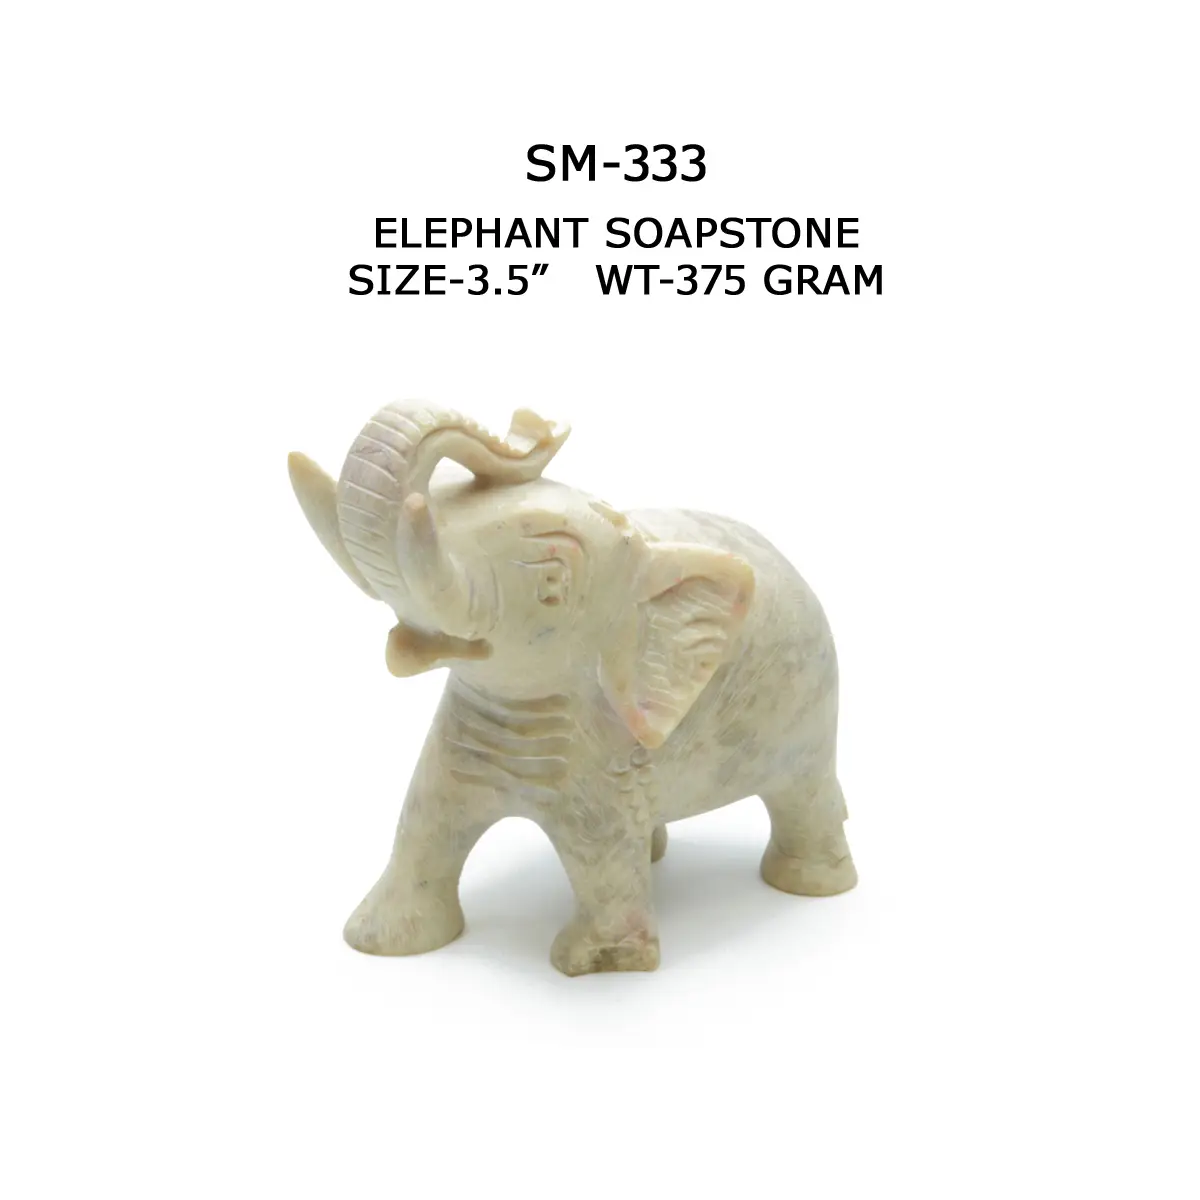 ELEPHANT SOAPSTONE